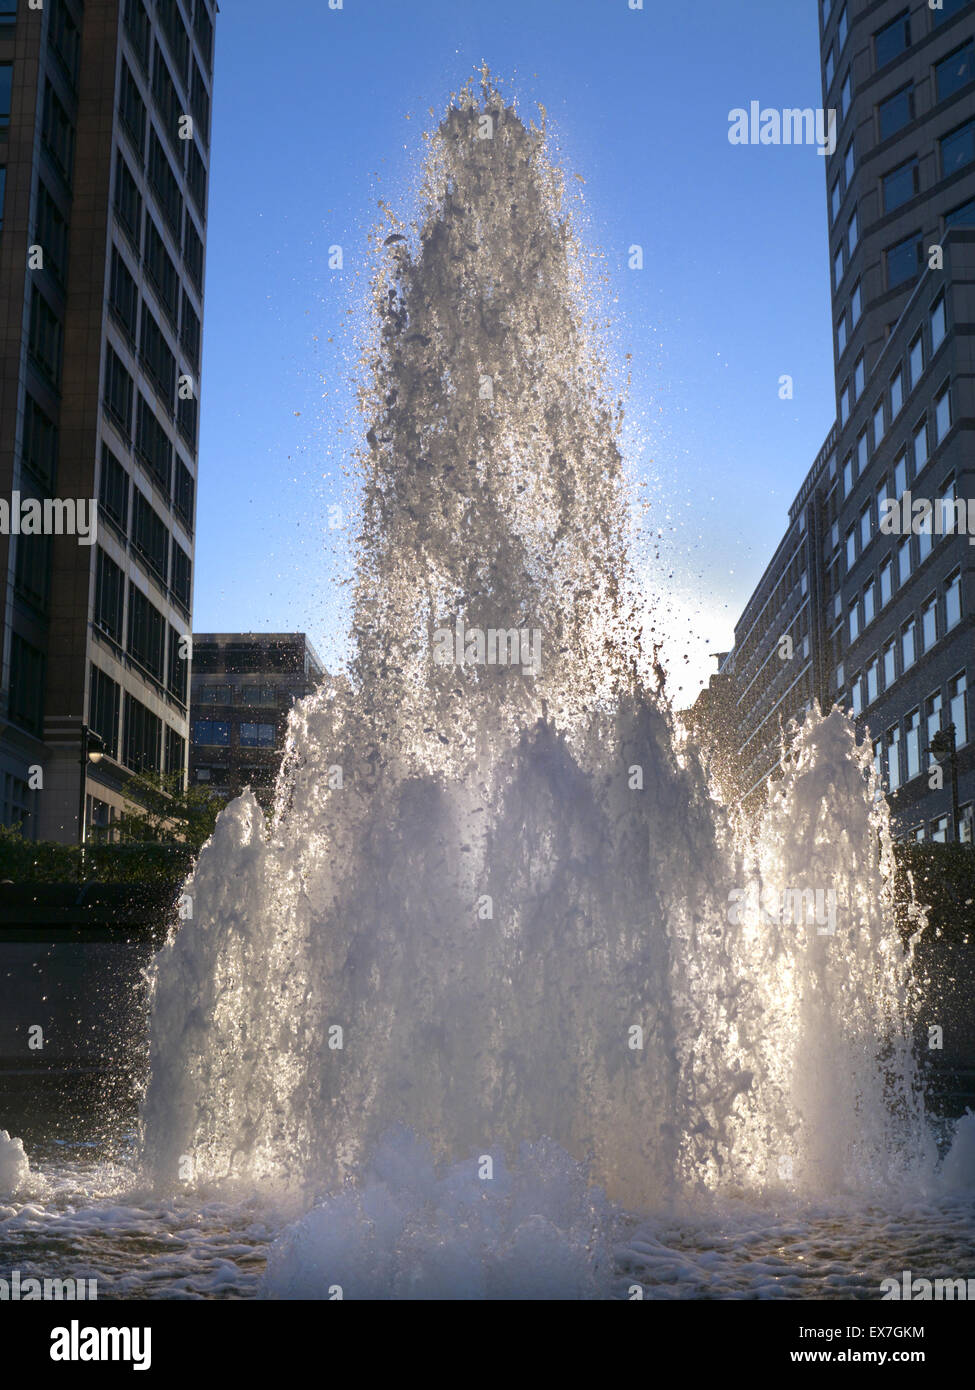 Fontane a Cabot Square detto per rappresentare il denaro che scorre come acqua.... Canary Wharf London financial district Foto Stock